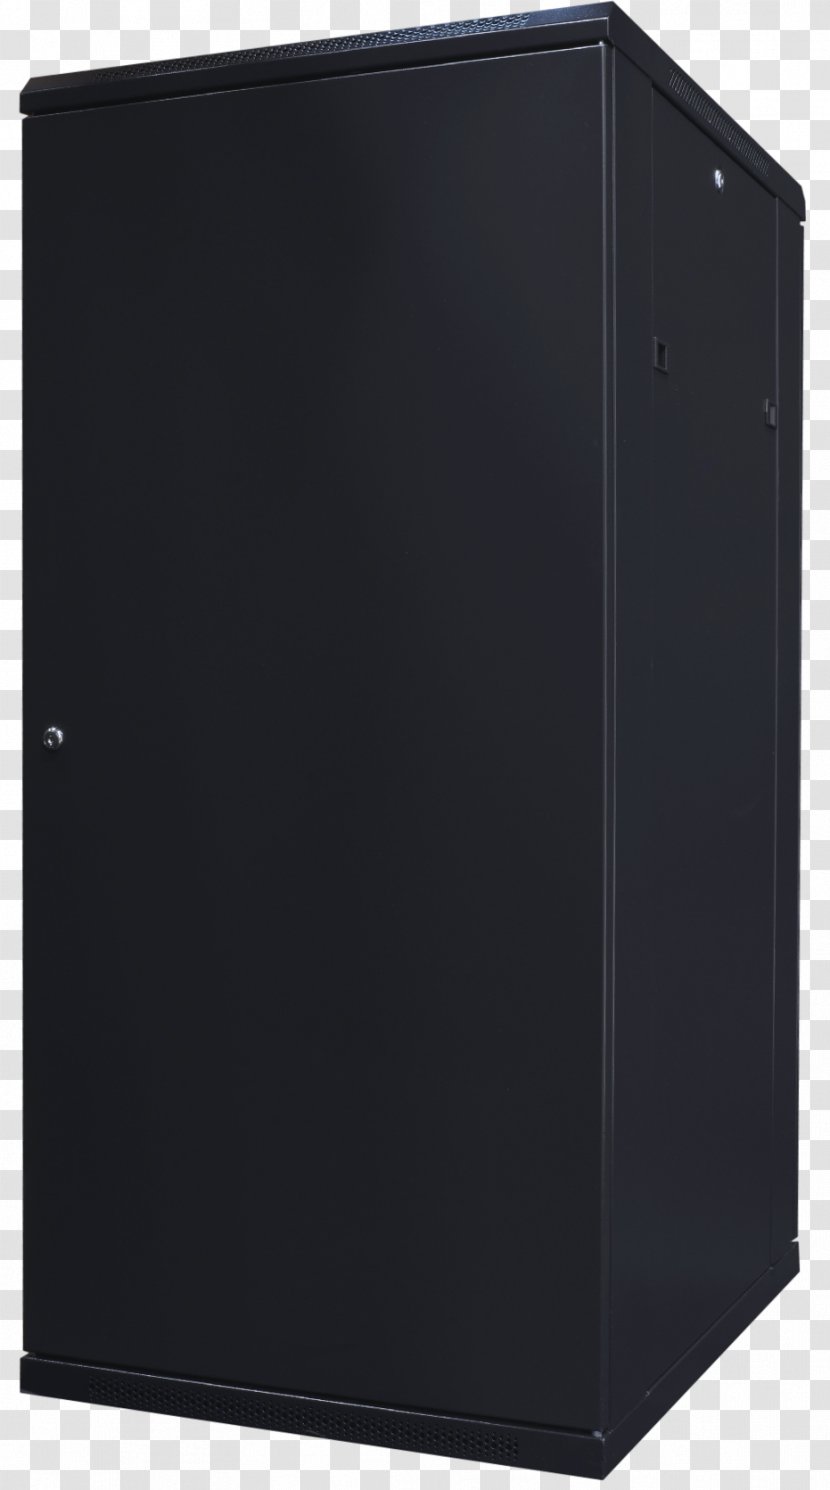 Refrigerator Danby Designer DAR110A2 Home Appliance Picture Frames - Kitchen Transparent PNG